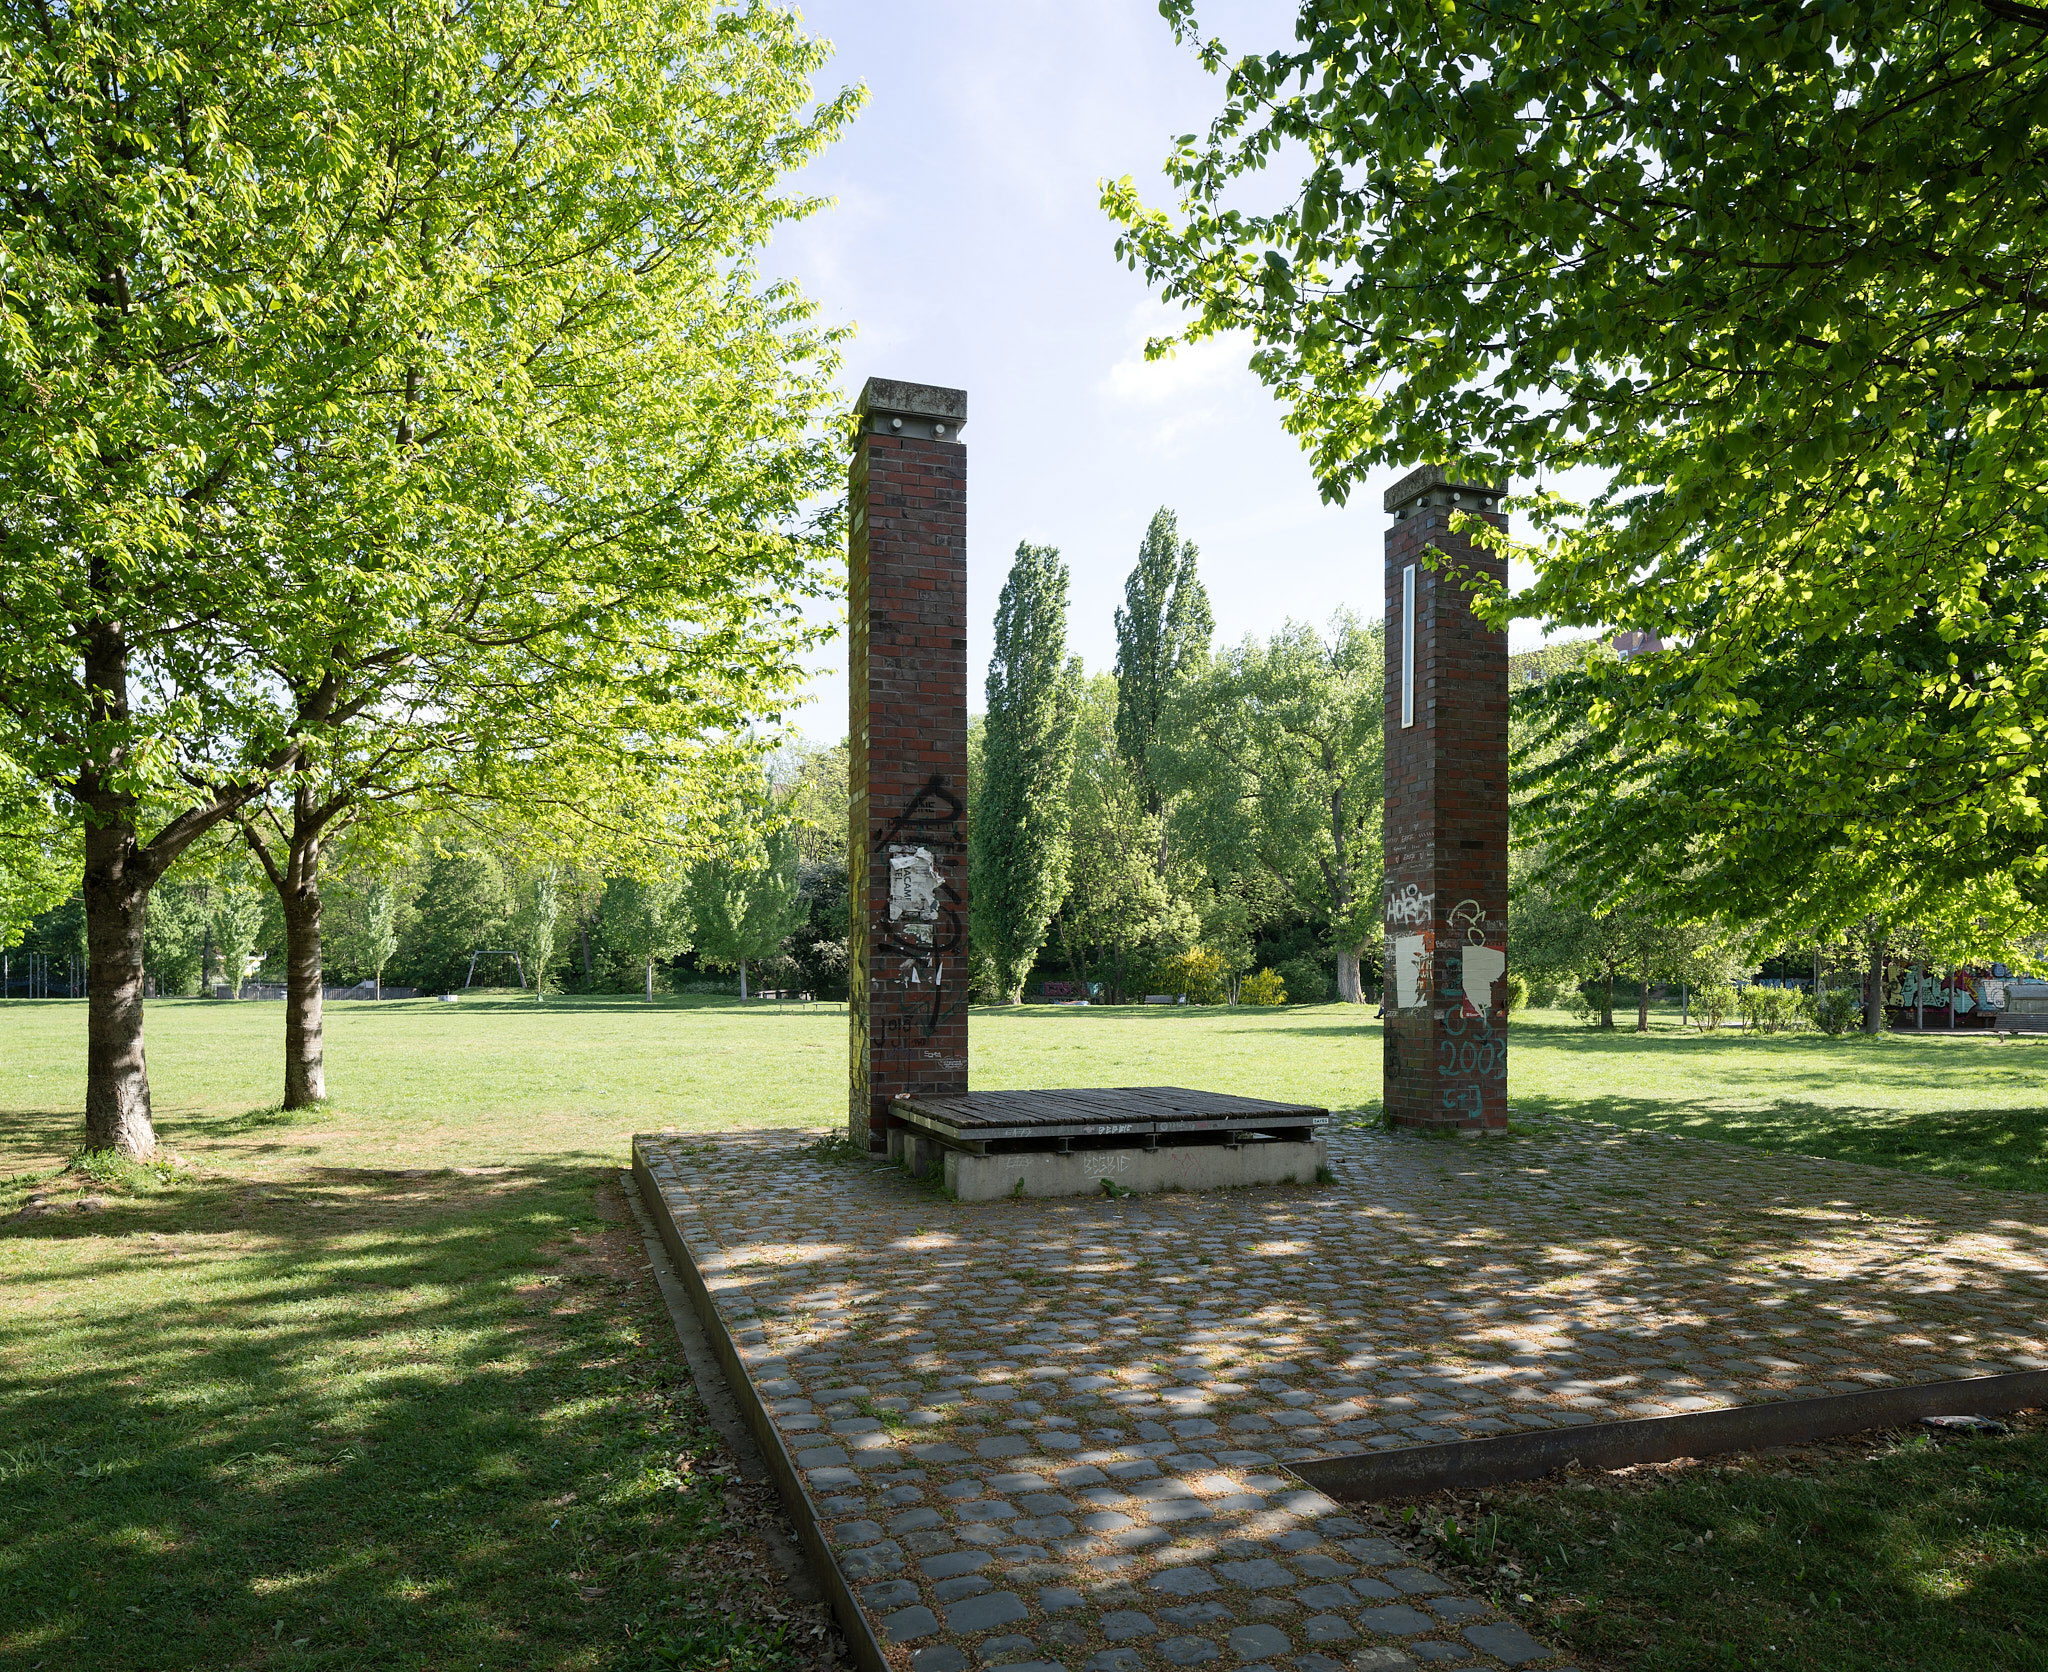 Das Foto zeigt den Nordstadtpark. Bäume stehen auf einer grünen Wiese. In der Mitte ist ein gepflasterter Platz mit zwei Säulen aus Ziegelsteinen zu sehen.